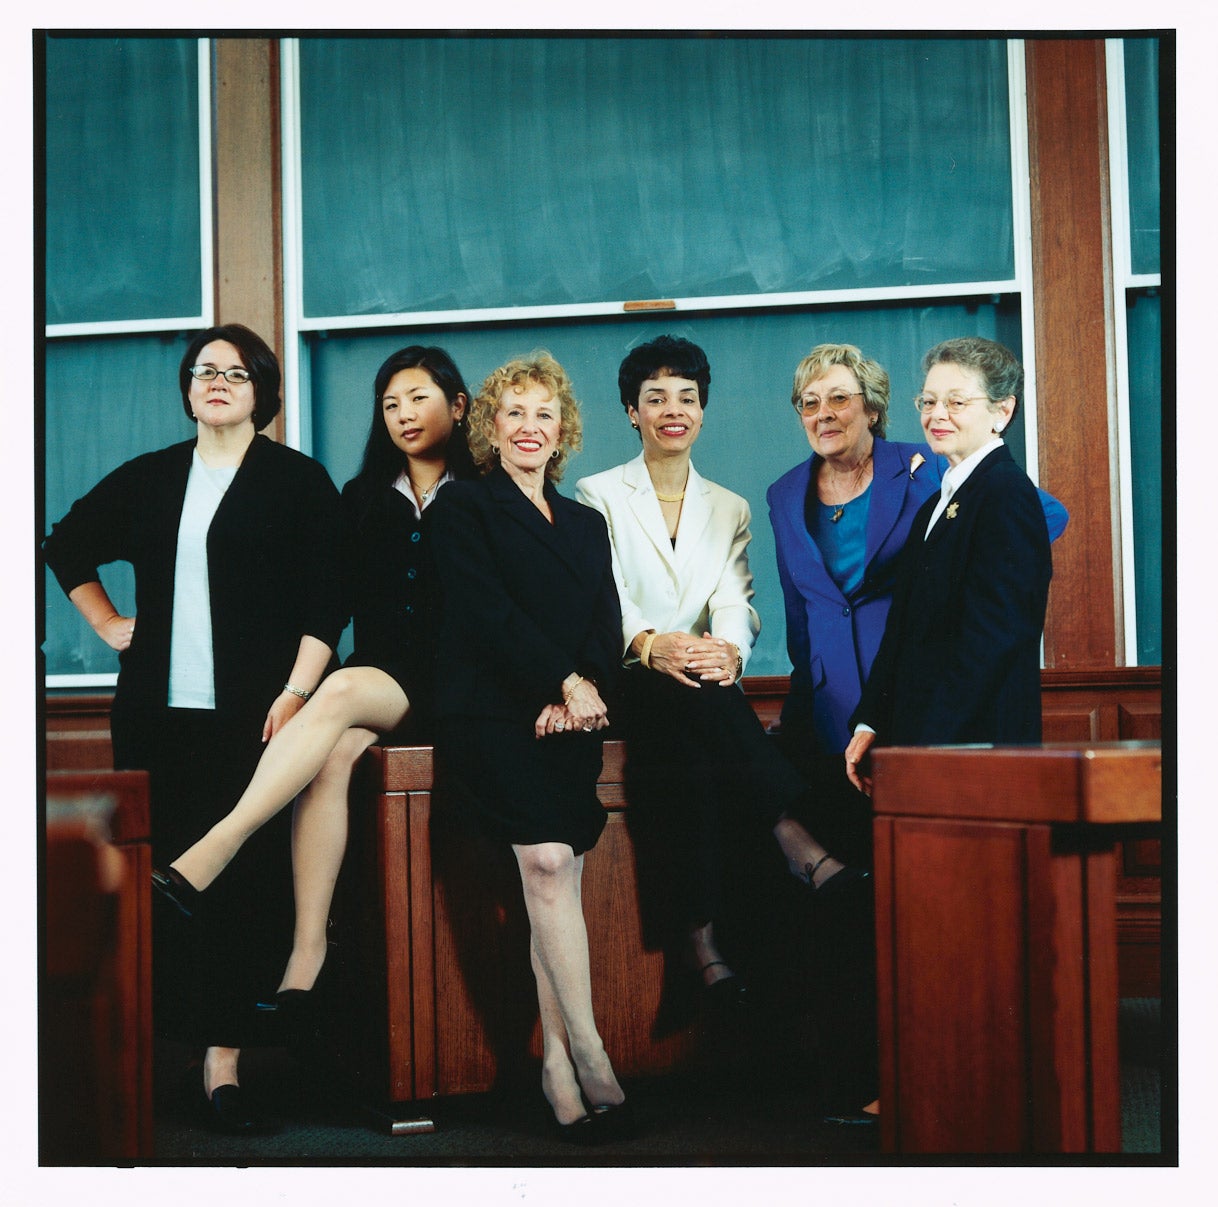 Six women in Harvard classroom